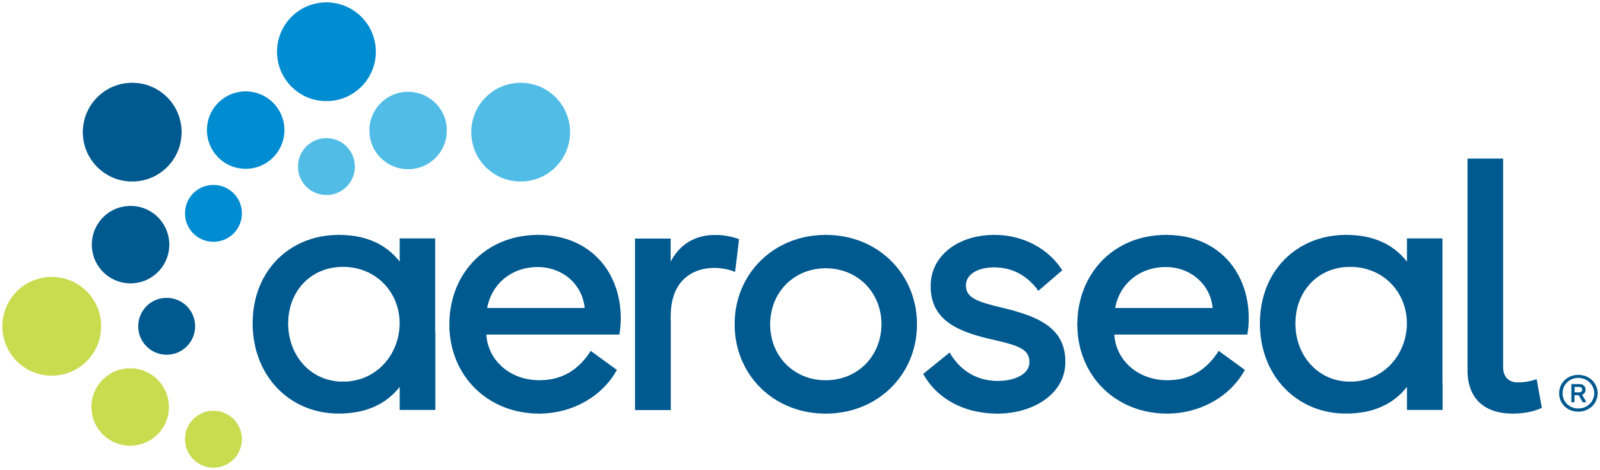 aeroseal logo